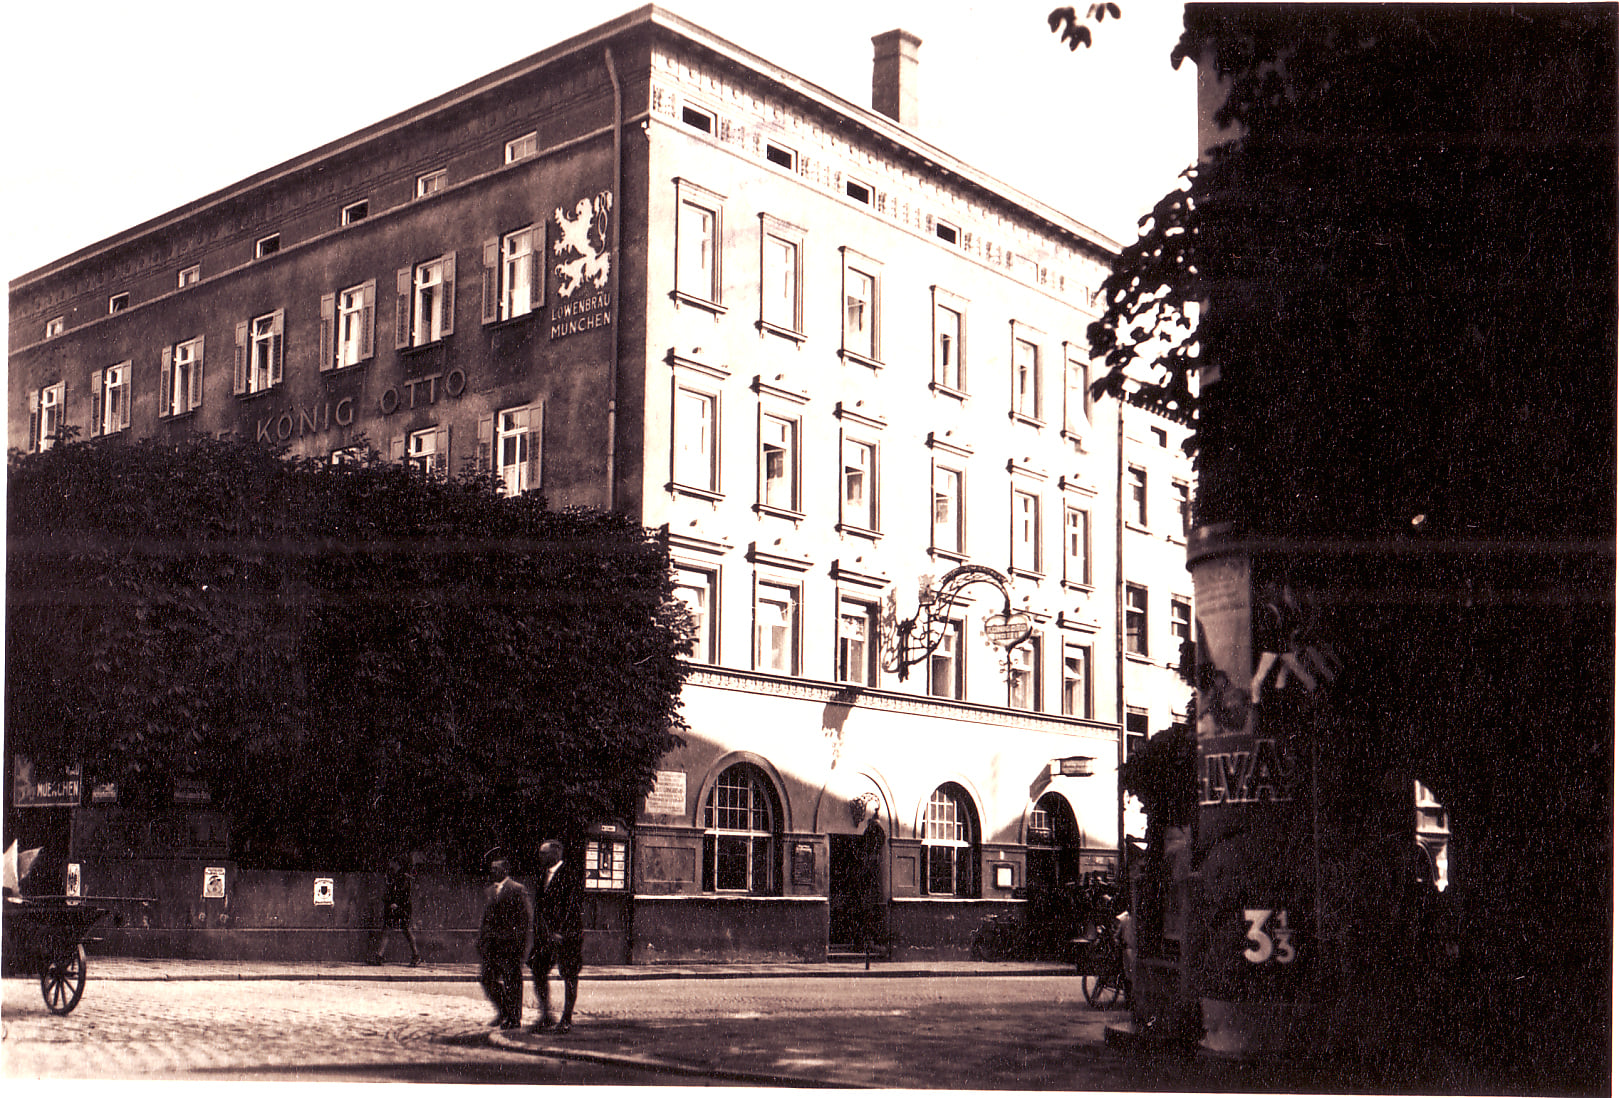 Gasthof König Otto in Rosenheim im Jahr 1933